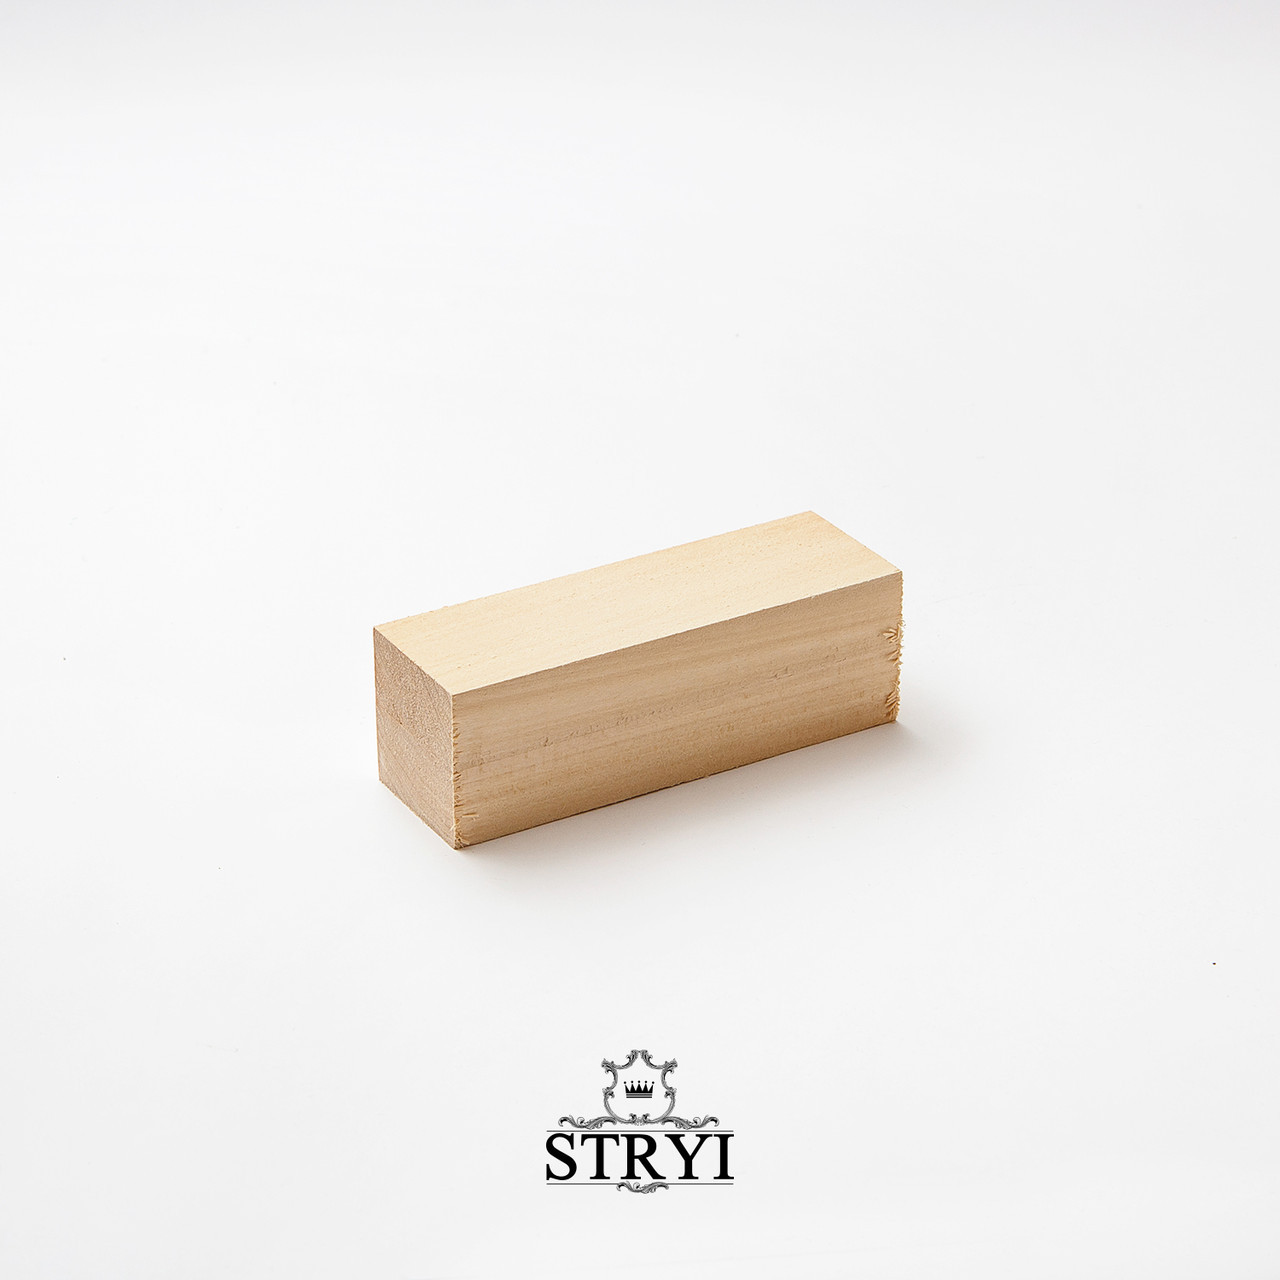 Брусок дерев'яний STRYI для вирізання, липа, 150*25*25мм, арт.702525